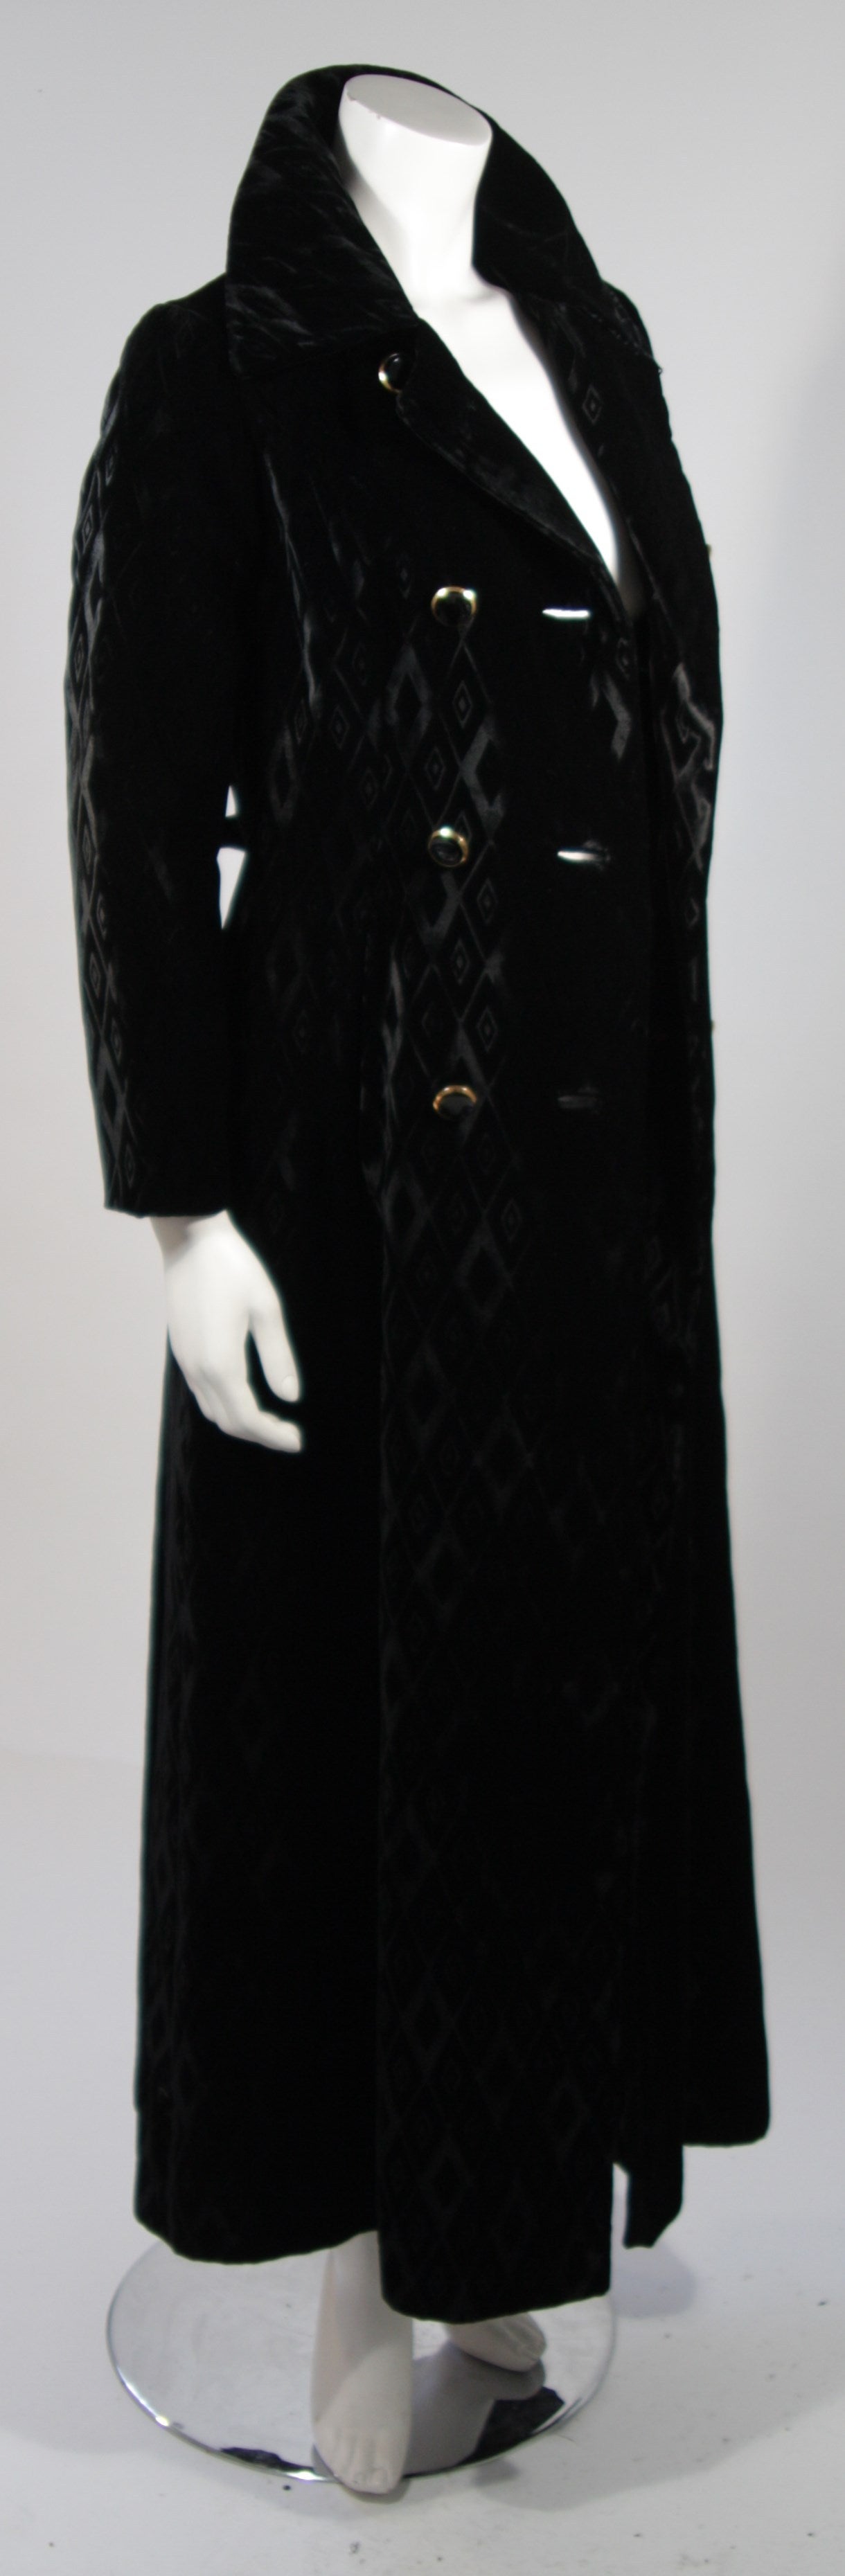 1970's Hudson's Black Diamond Patterned Velvet Coat Size 1